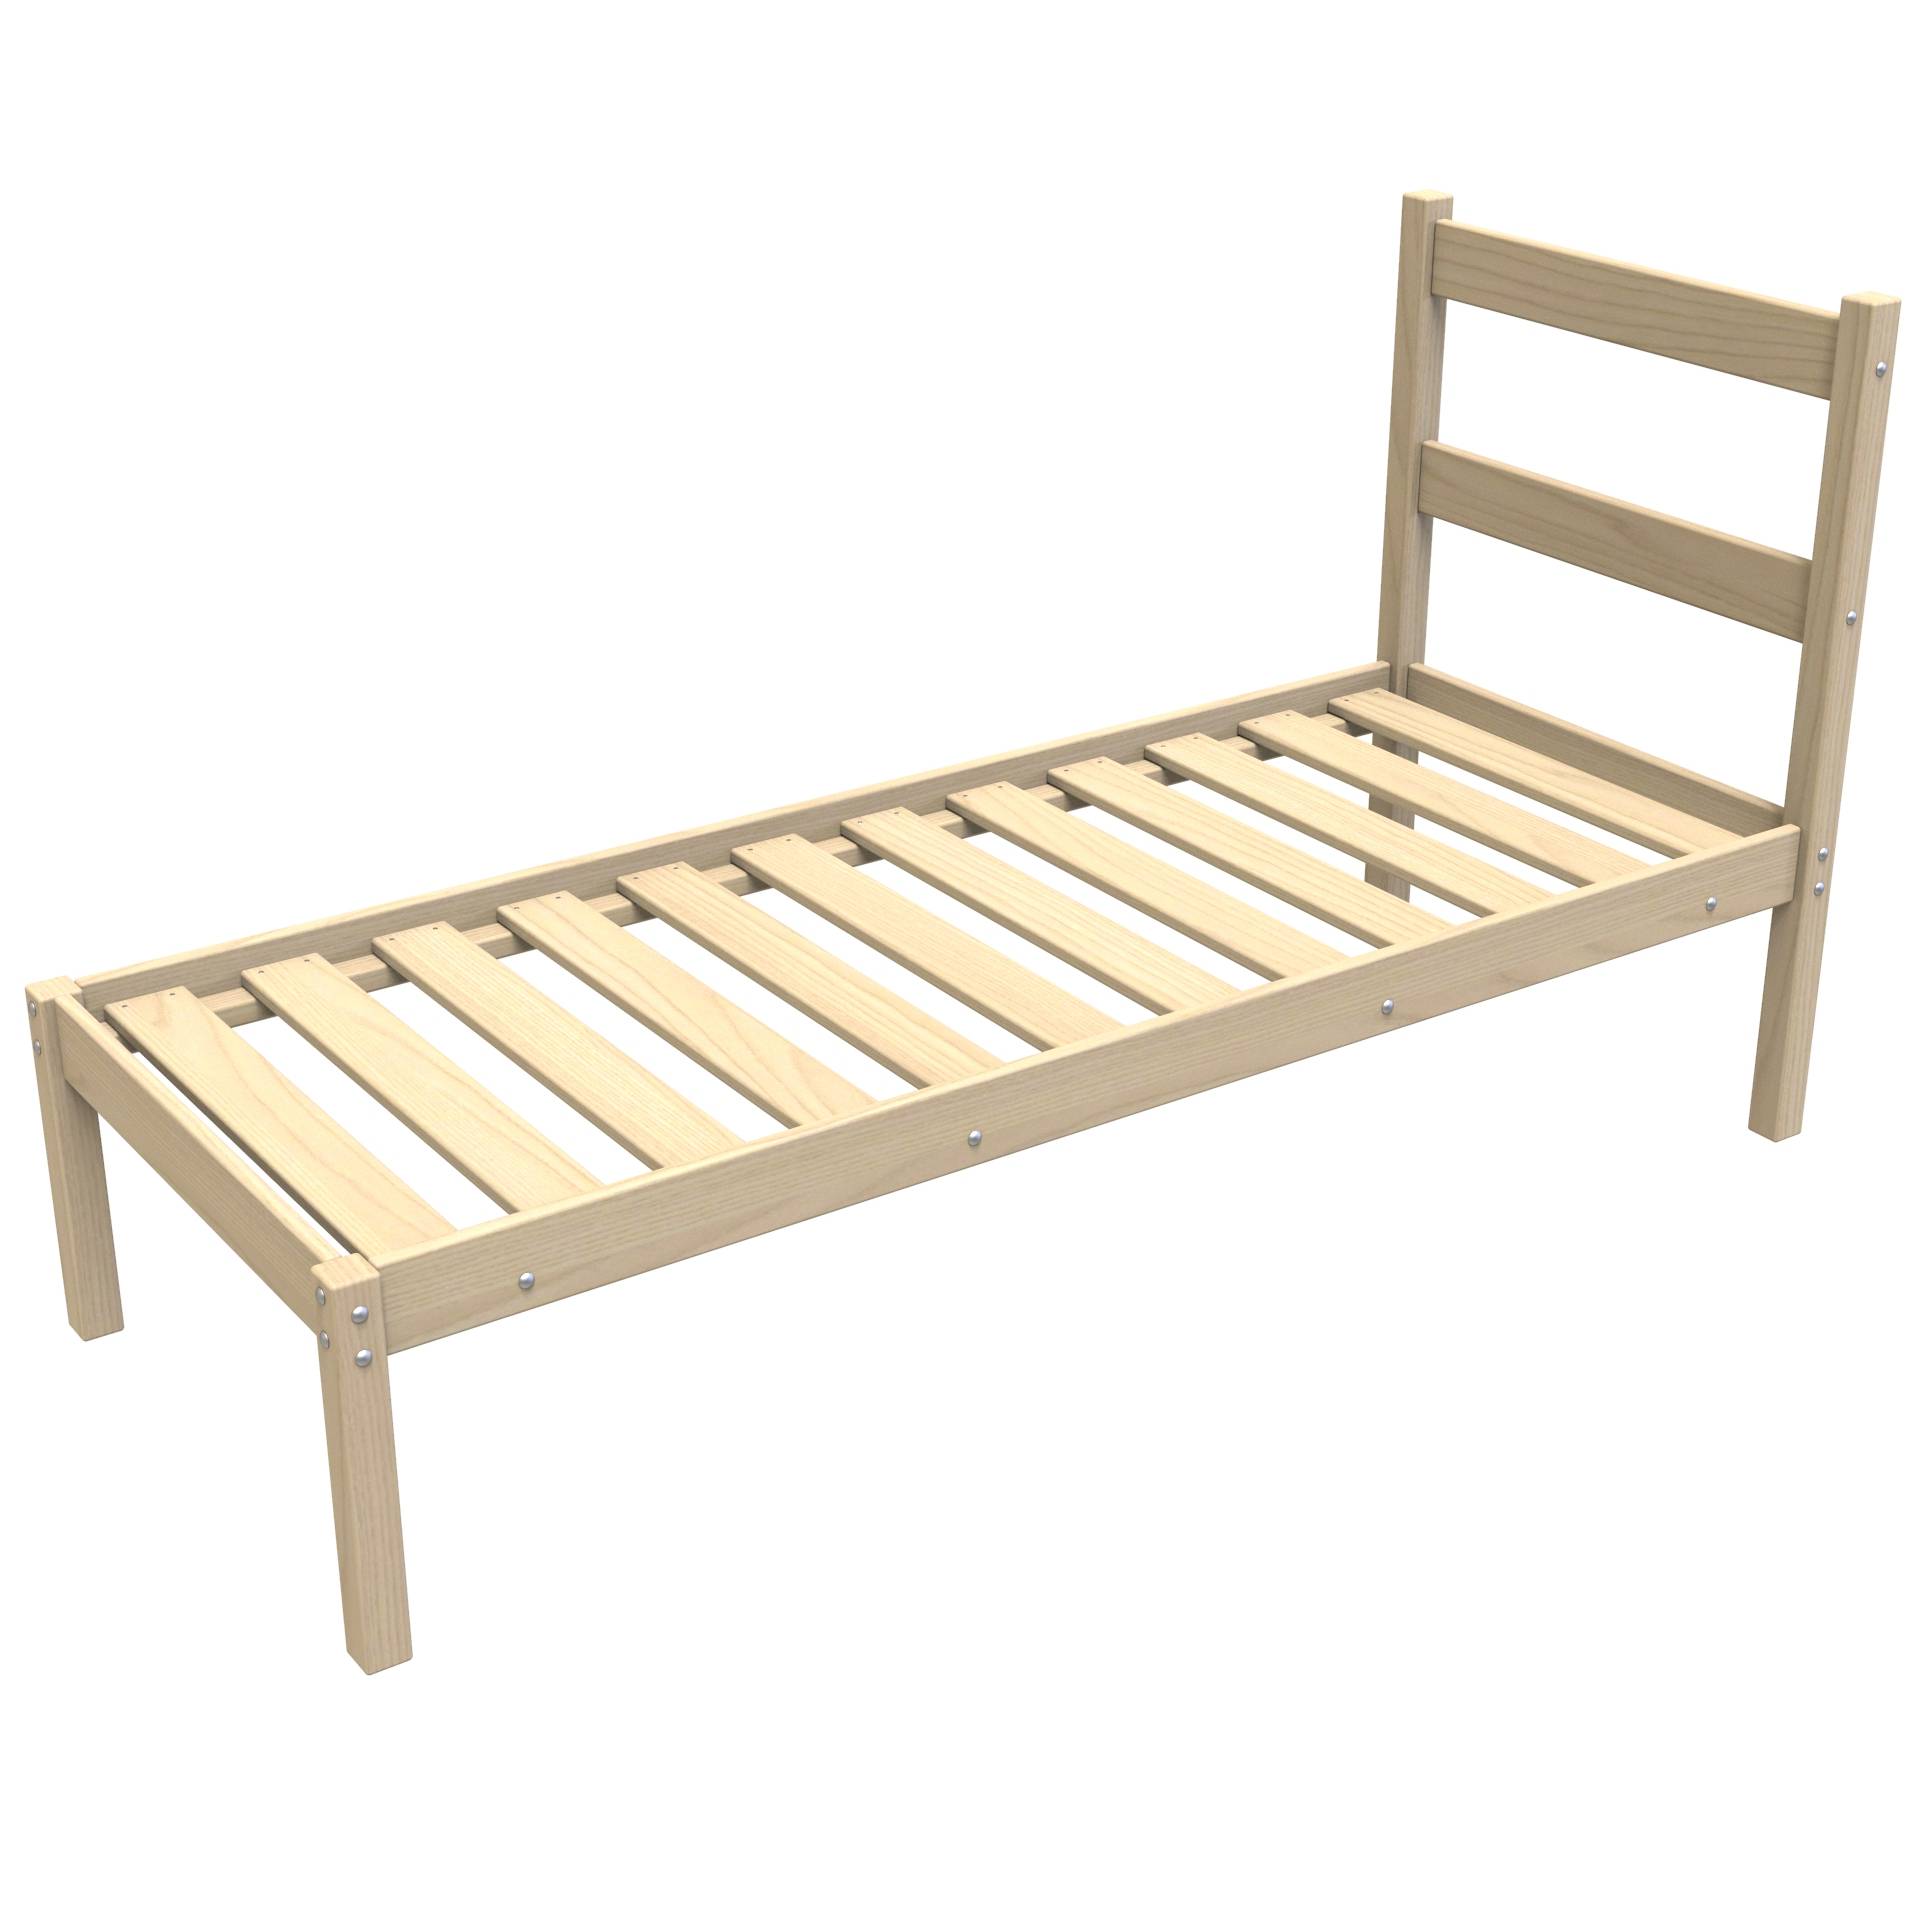 Кровать деревянная одноярусная — КД/1-200/90 для общежития